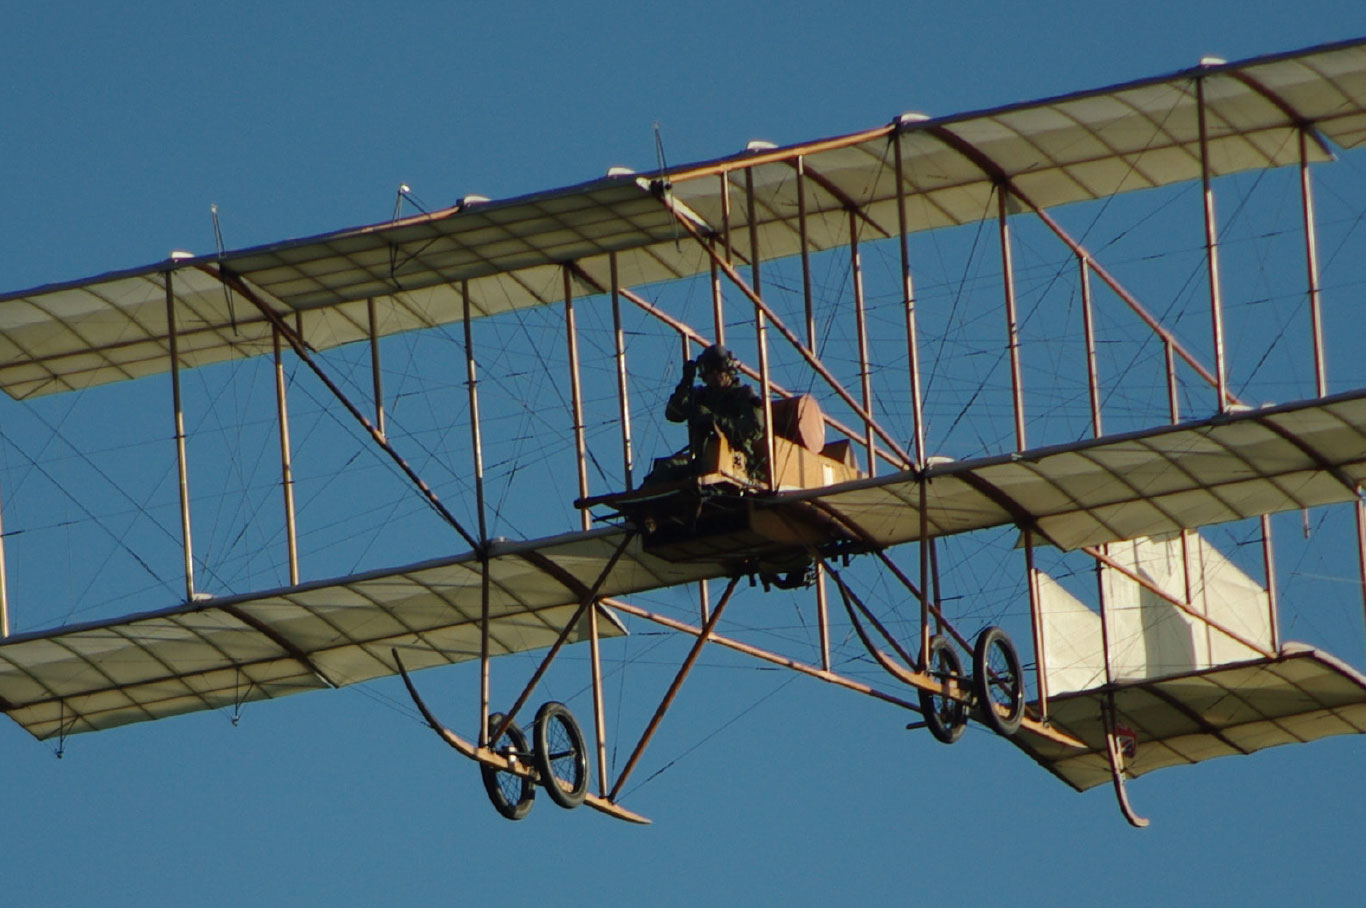 Sur fond de ciel bleu vole la réplique d’un avion biplan Bristol Boxkite de 1909, avec ses deux ailes portantes superposées, sa structure en bois et sa voilure de toile fixée par de nombreux haubans.